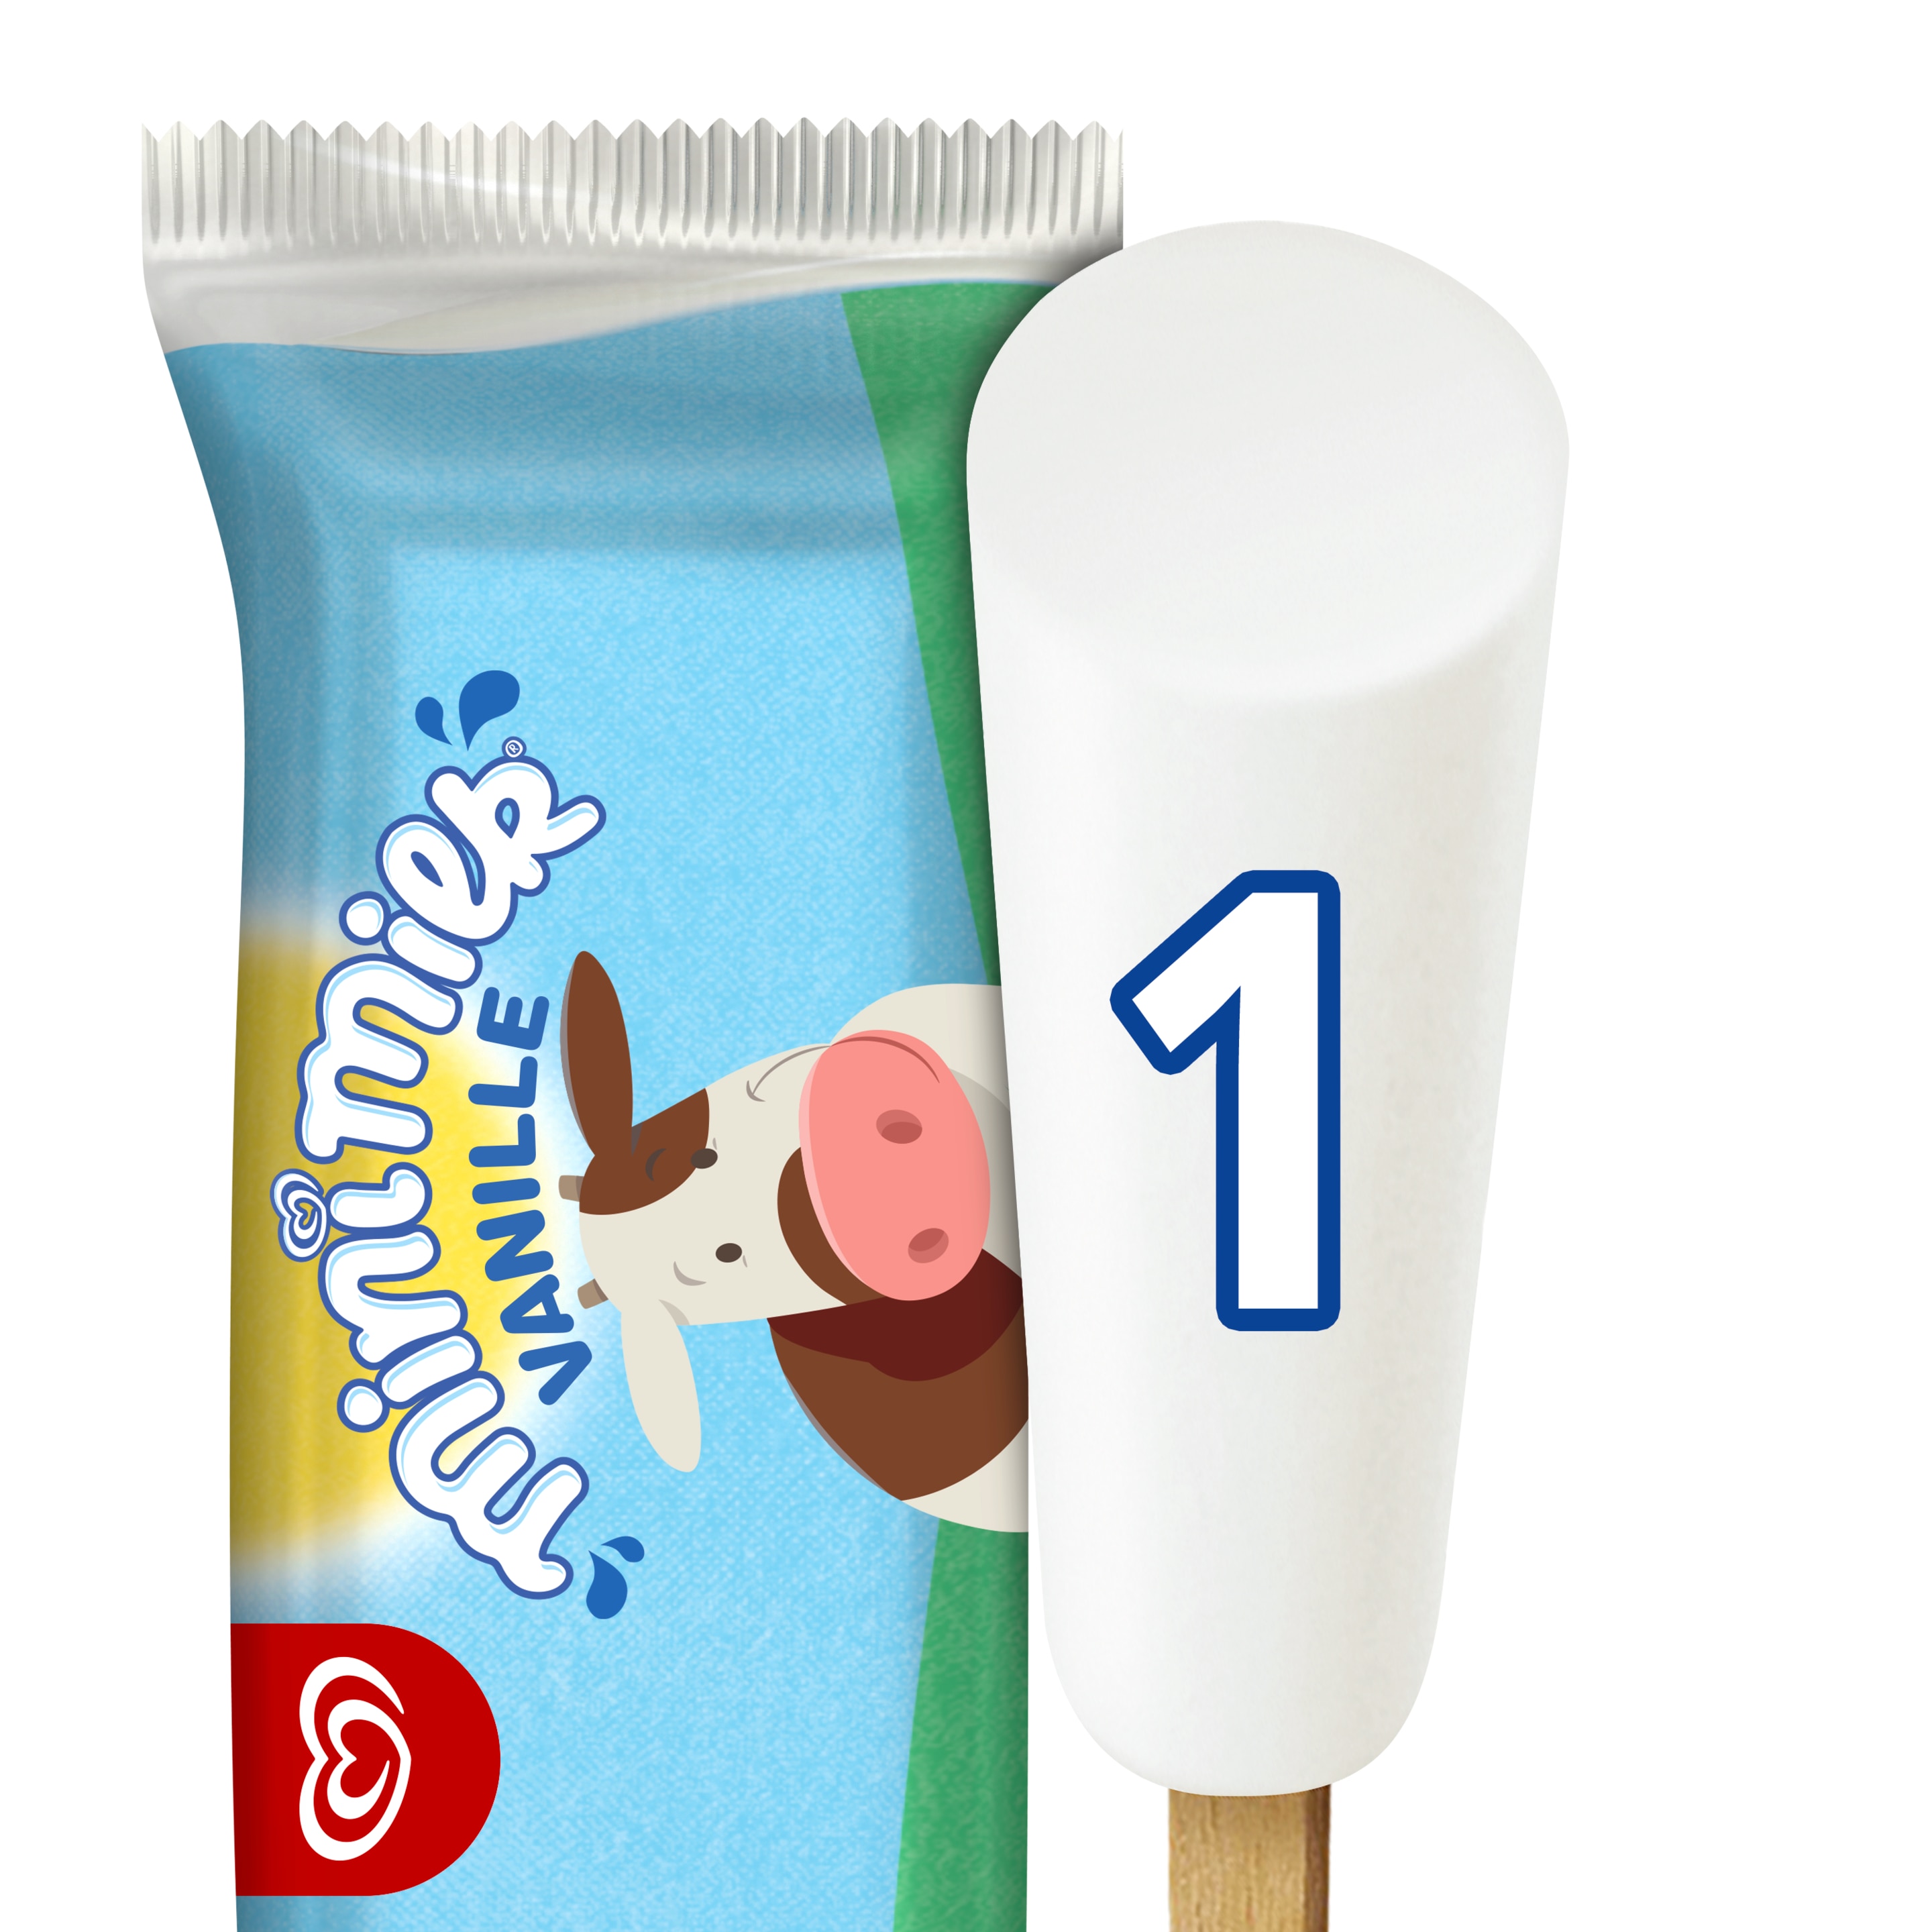 Kaufladen - Eis am Stiel - Mini Milk - 3 St - Spielzeug - Gratis